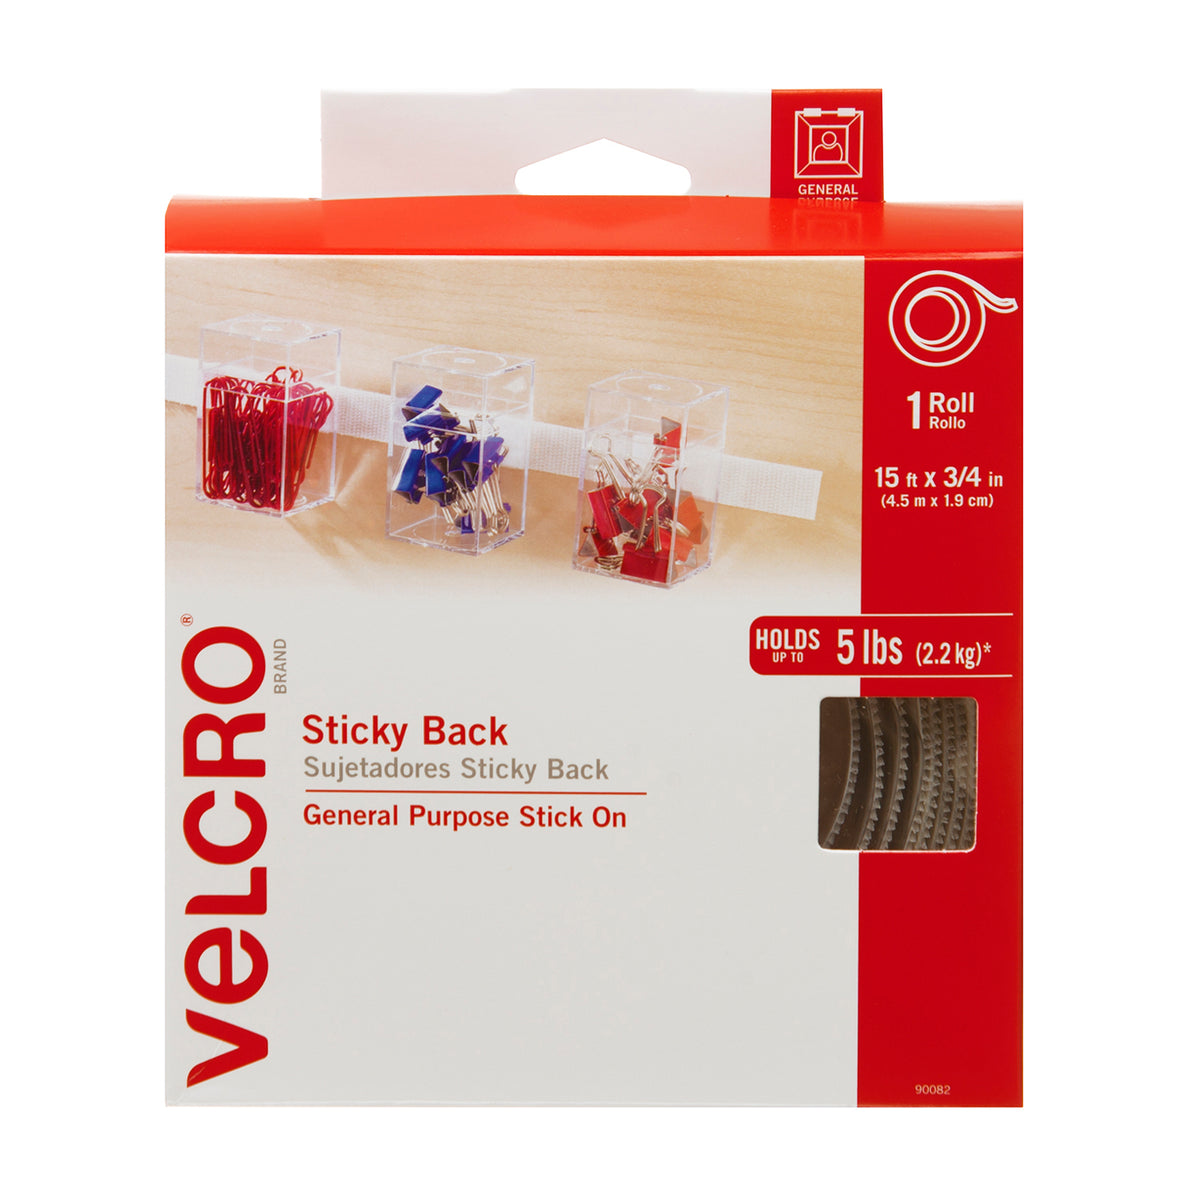 Genuine VELCRO® Brand Self-Adhesive Hook & Loop Double Sided Tape Fastener